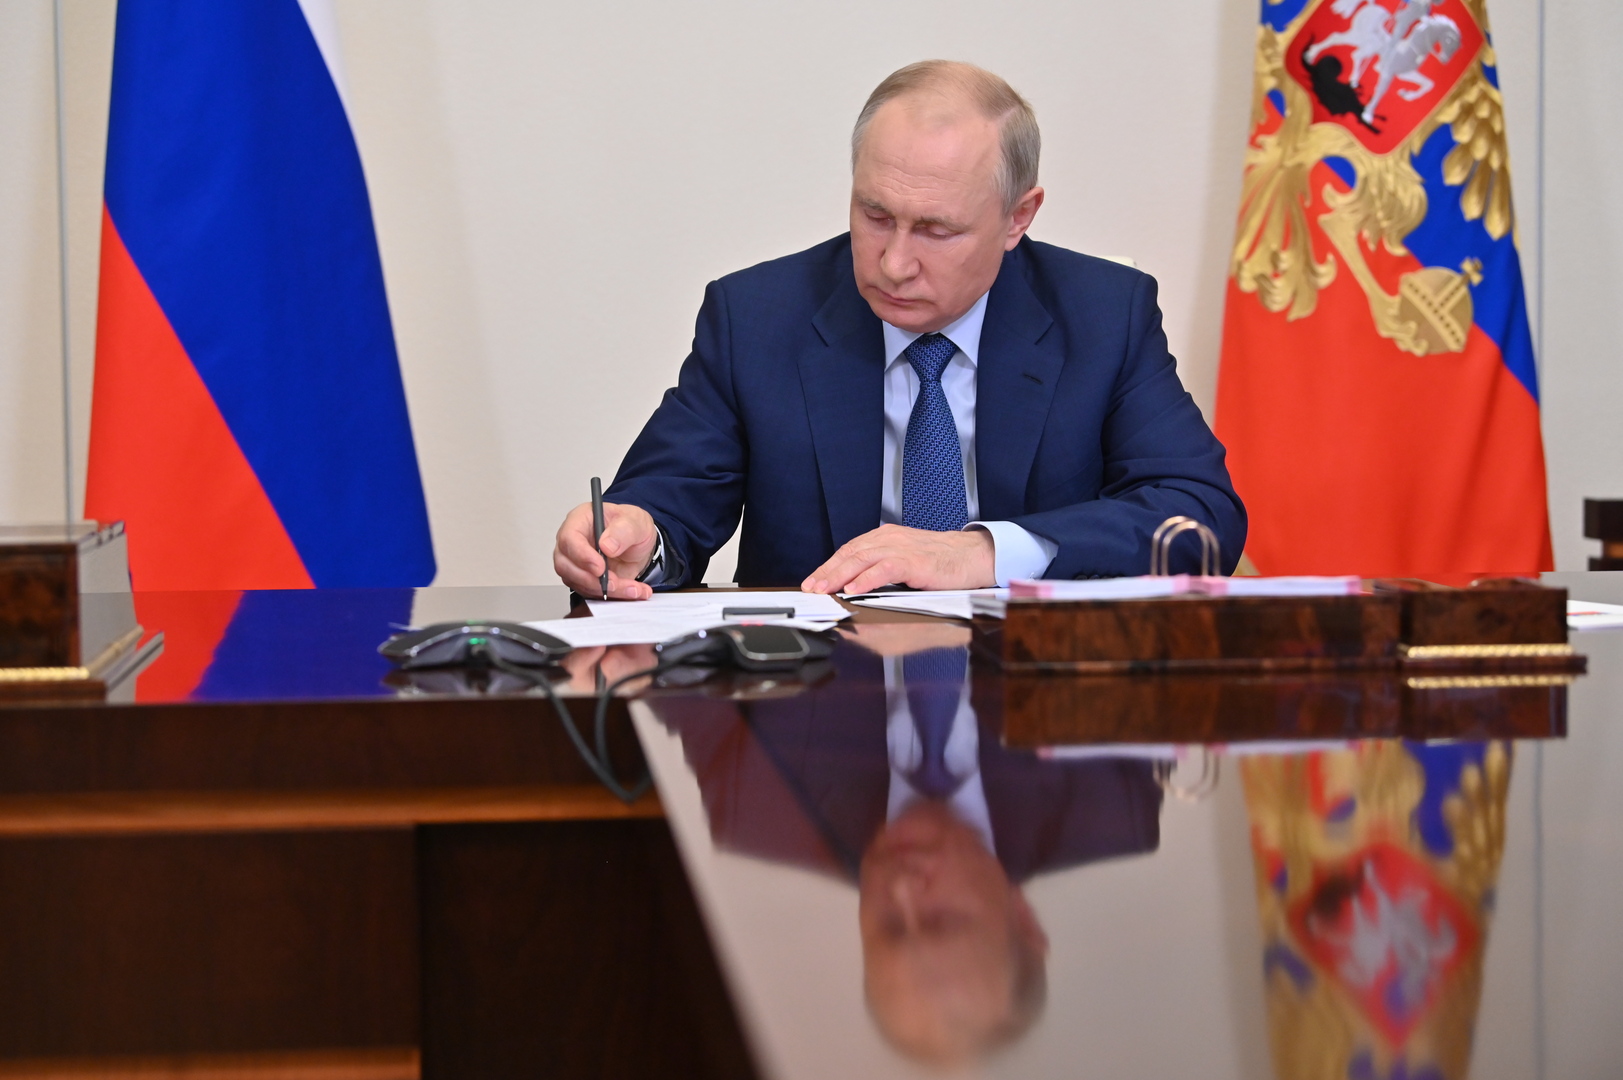 بوتين يوقع مرسوما يتيح سداد سندات دولية بالروبل